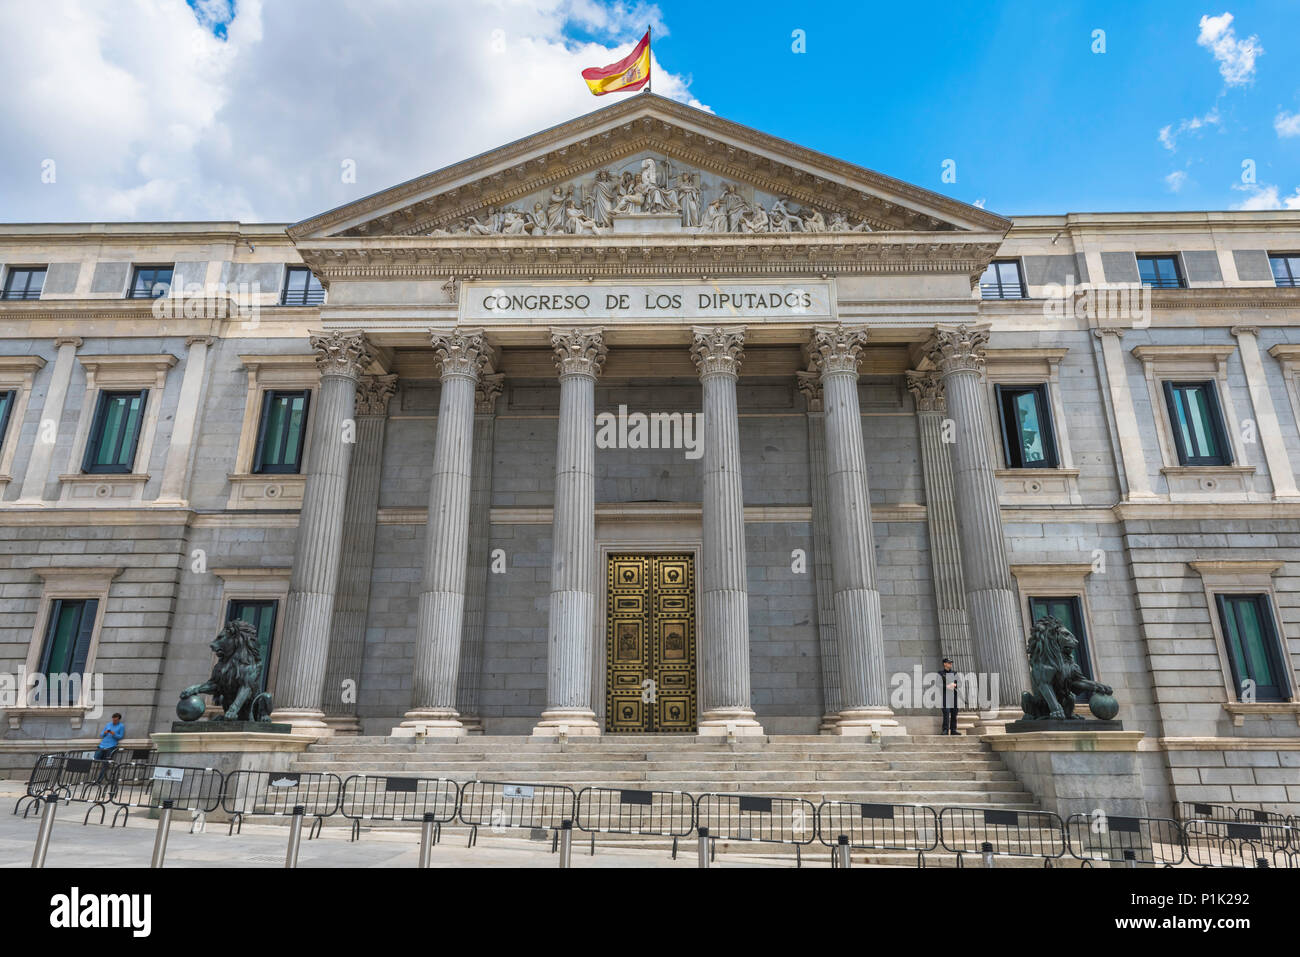 Spanien Parlament Gebäude, Blick auf den Congreso de los Diputados - das spanische Parlament Gebäude im Zentrum von Madrid, Spanien. Stockfoto